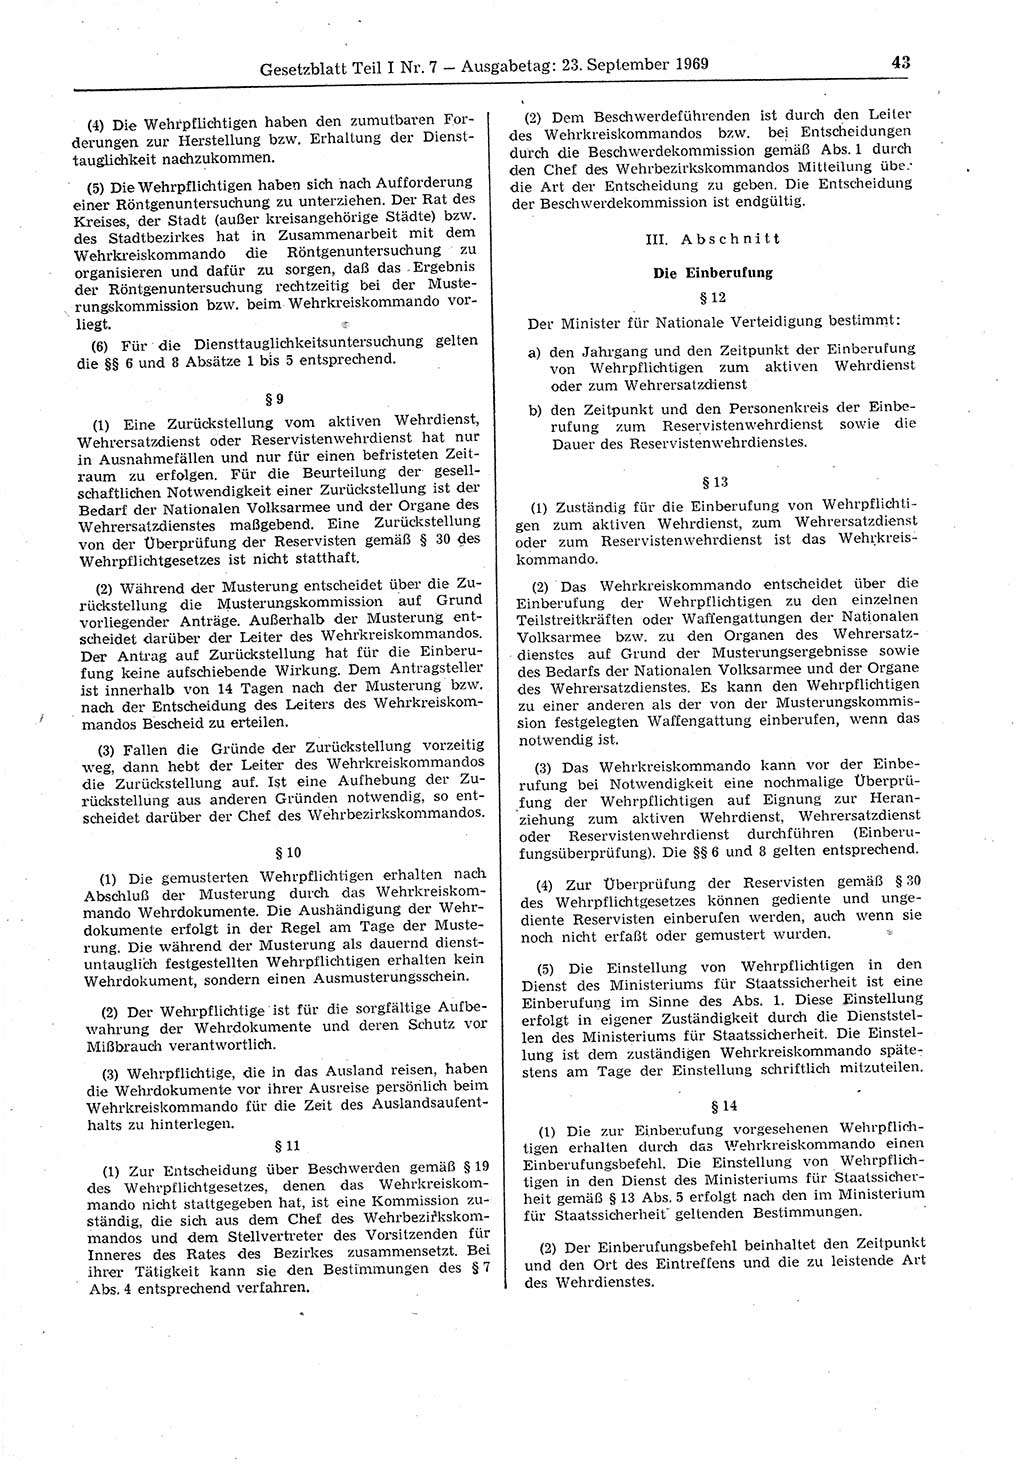 Gesetzblatt (GBl.) der Deutschen Demokratischen Republik (DDR) Teil Ⅰ 1969, Seite 43 (GBl. DDR Ⅰ 1969, S. 43)